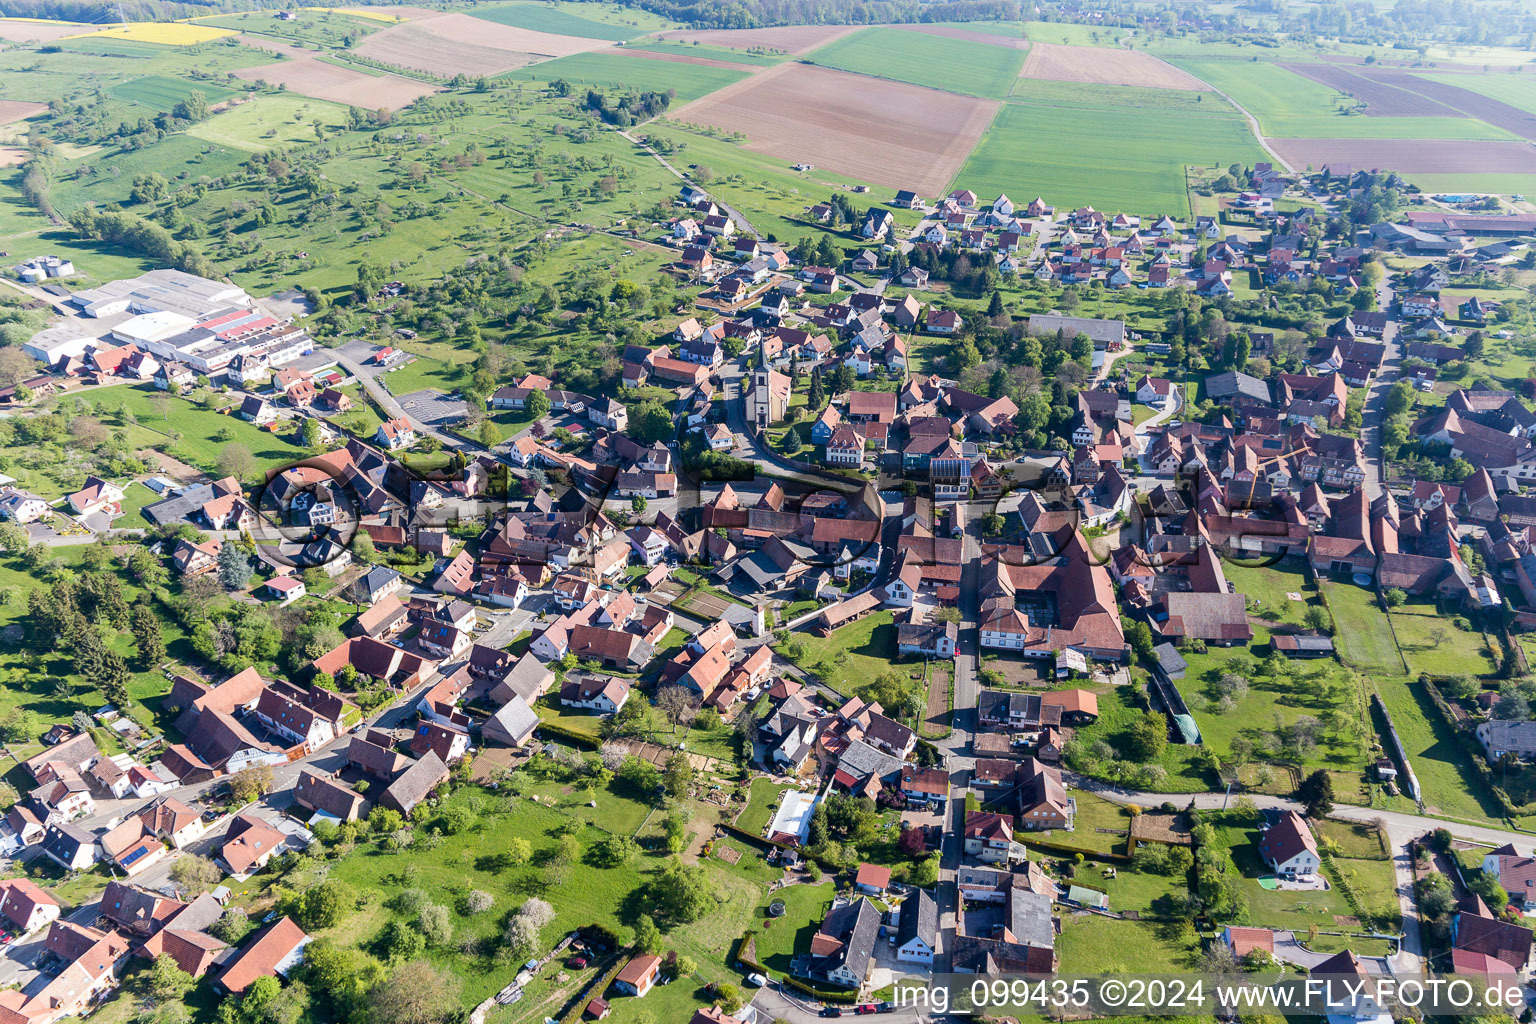 Luftbild von Dorf - Ansicht in Mietesheim in Grand Est im Bundesland Bas-Rhin, Frankreich